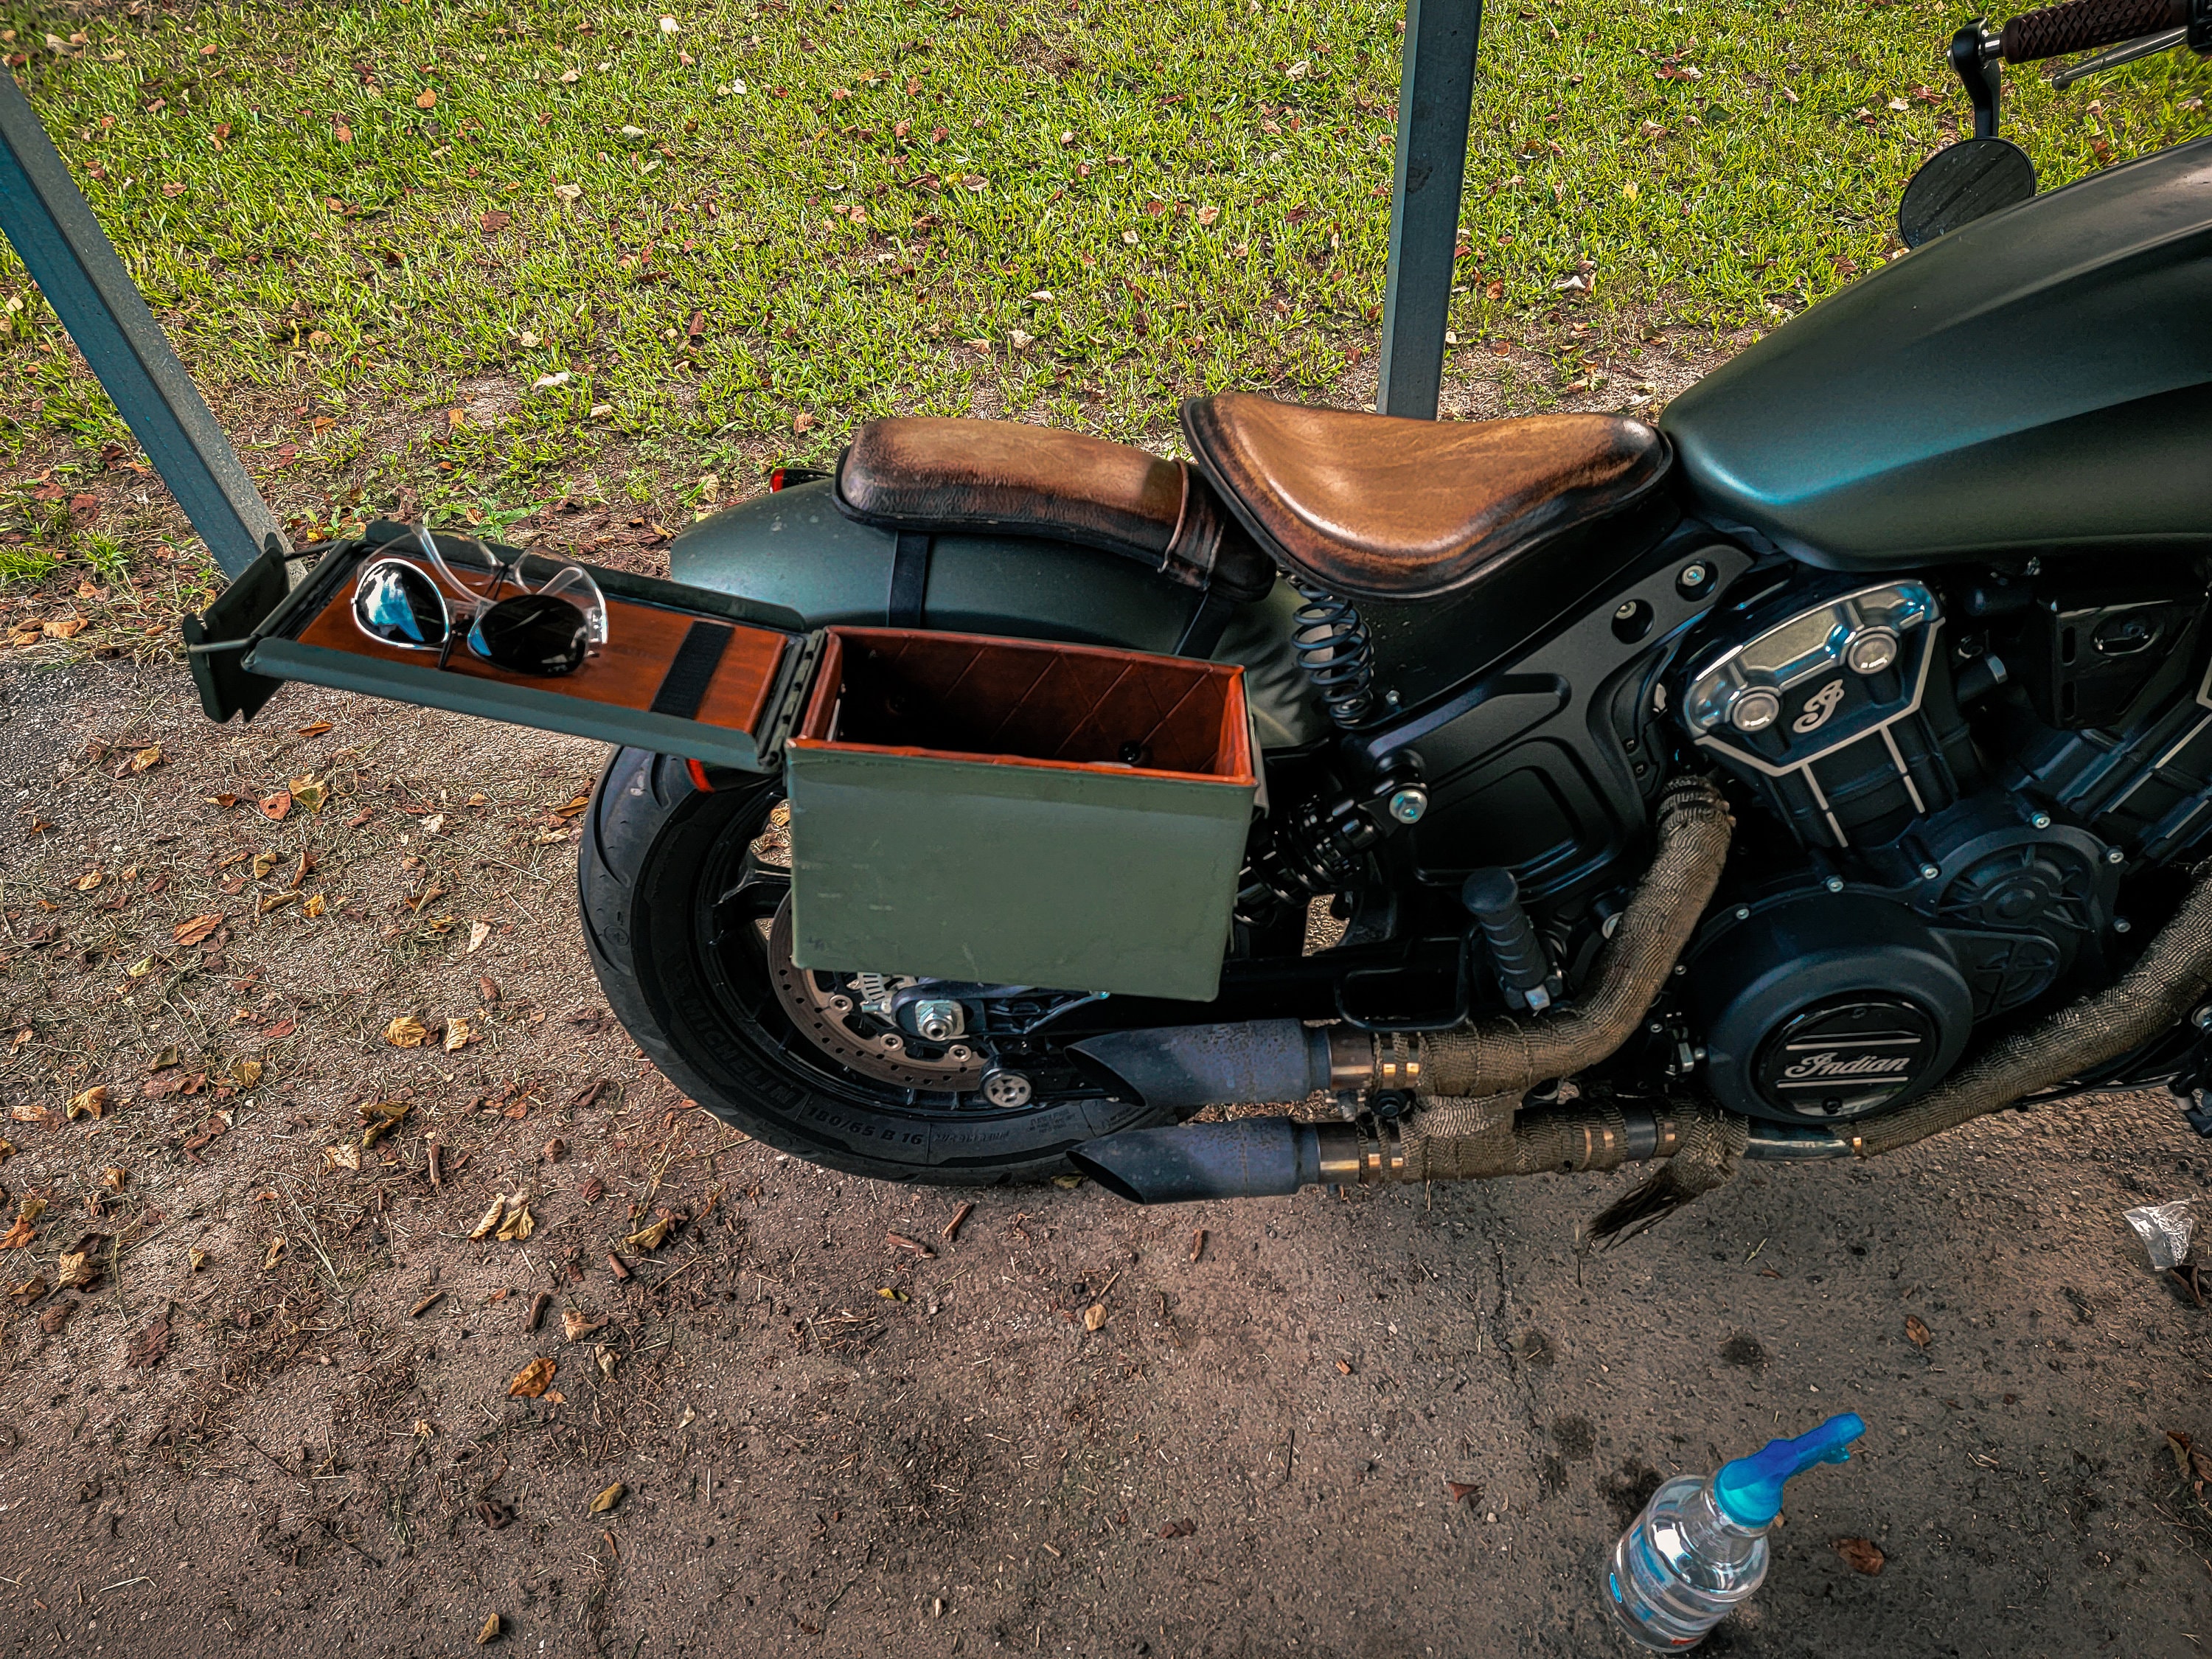 Universal Indian Motorrad Vorderseite Echtleder Werkzeugtasche Schwarz  Farbe D2